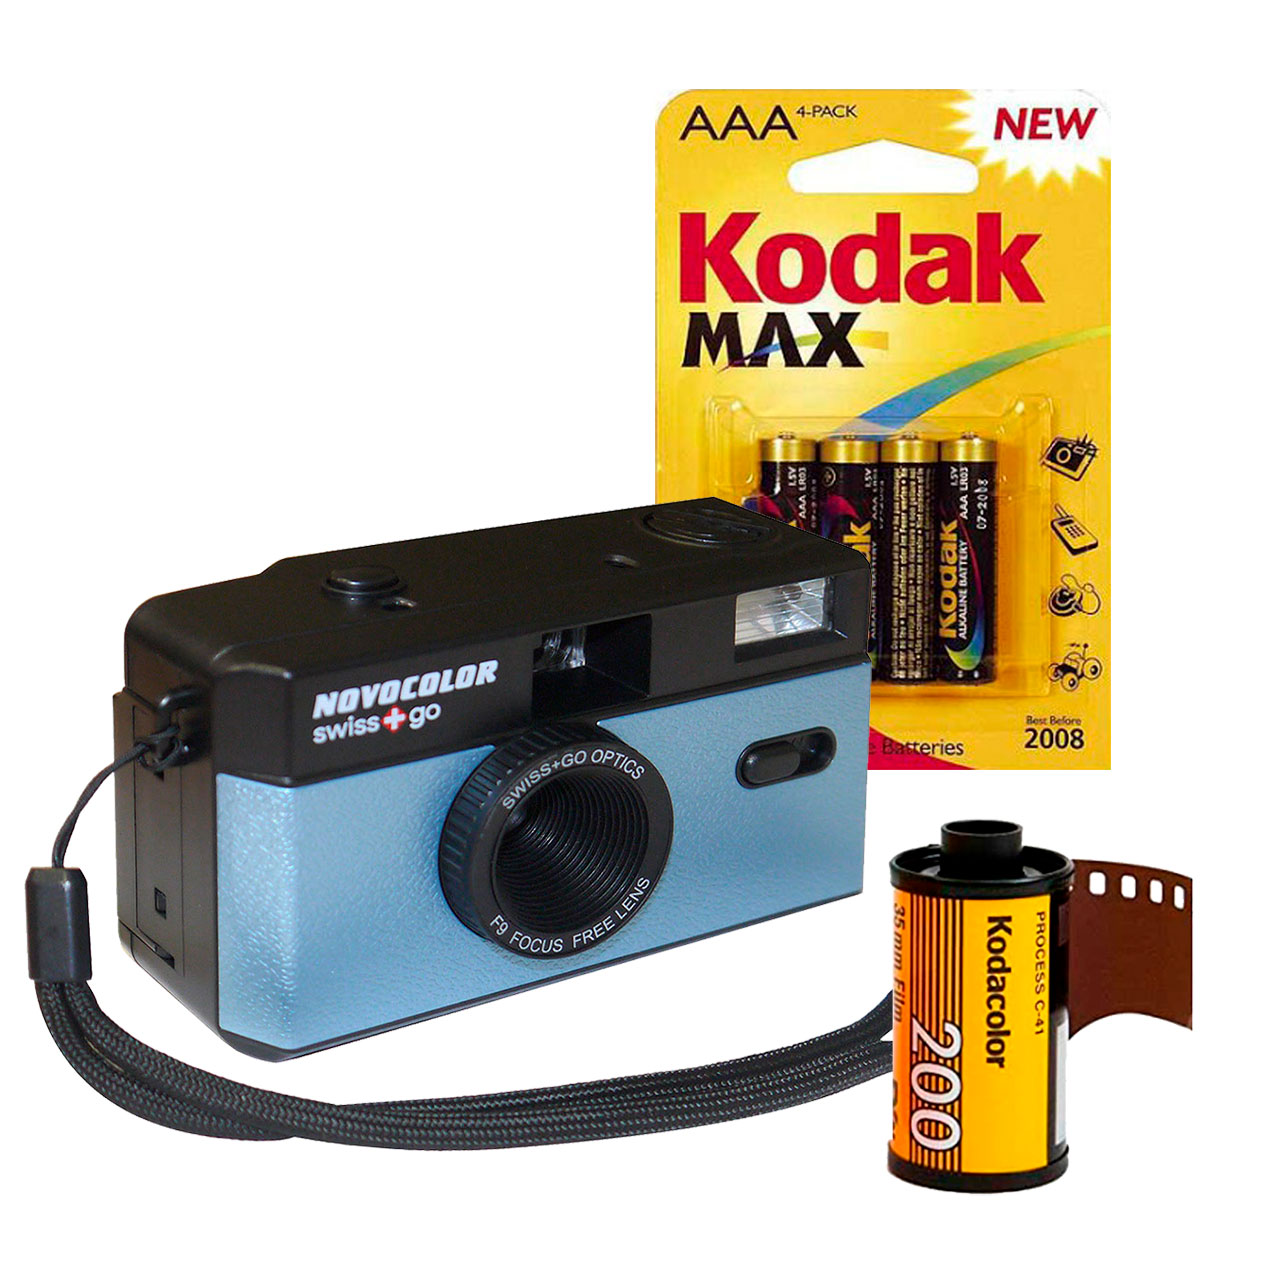 swiss+go – Novocolor cámara analógica 35mm reusable con flash - Foto R3,  film lab y fotografía analógica